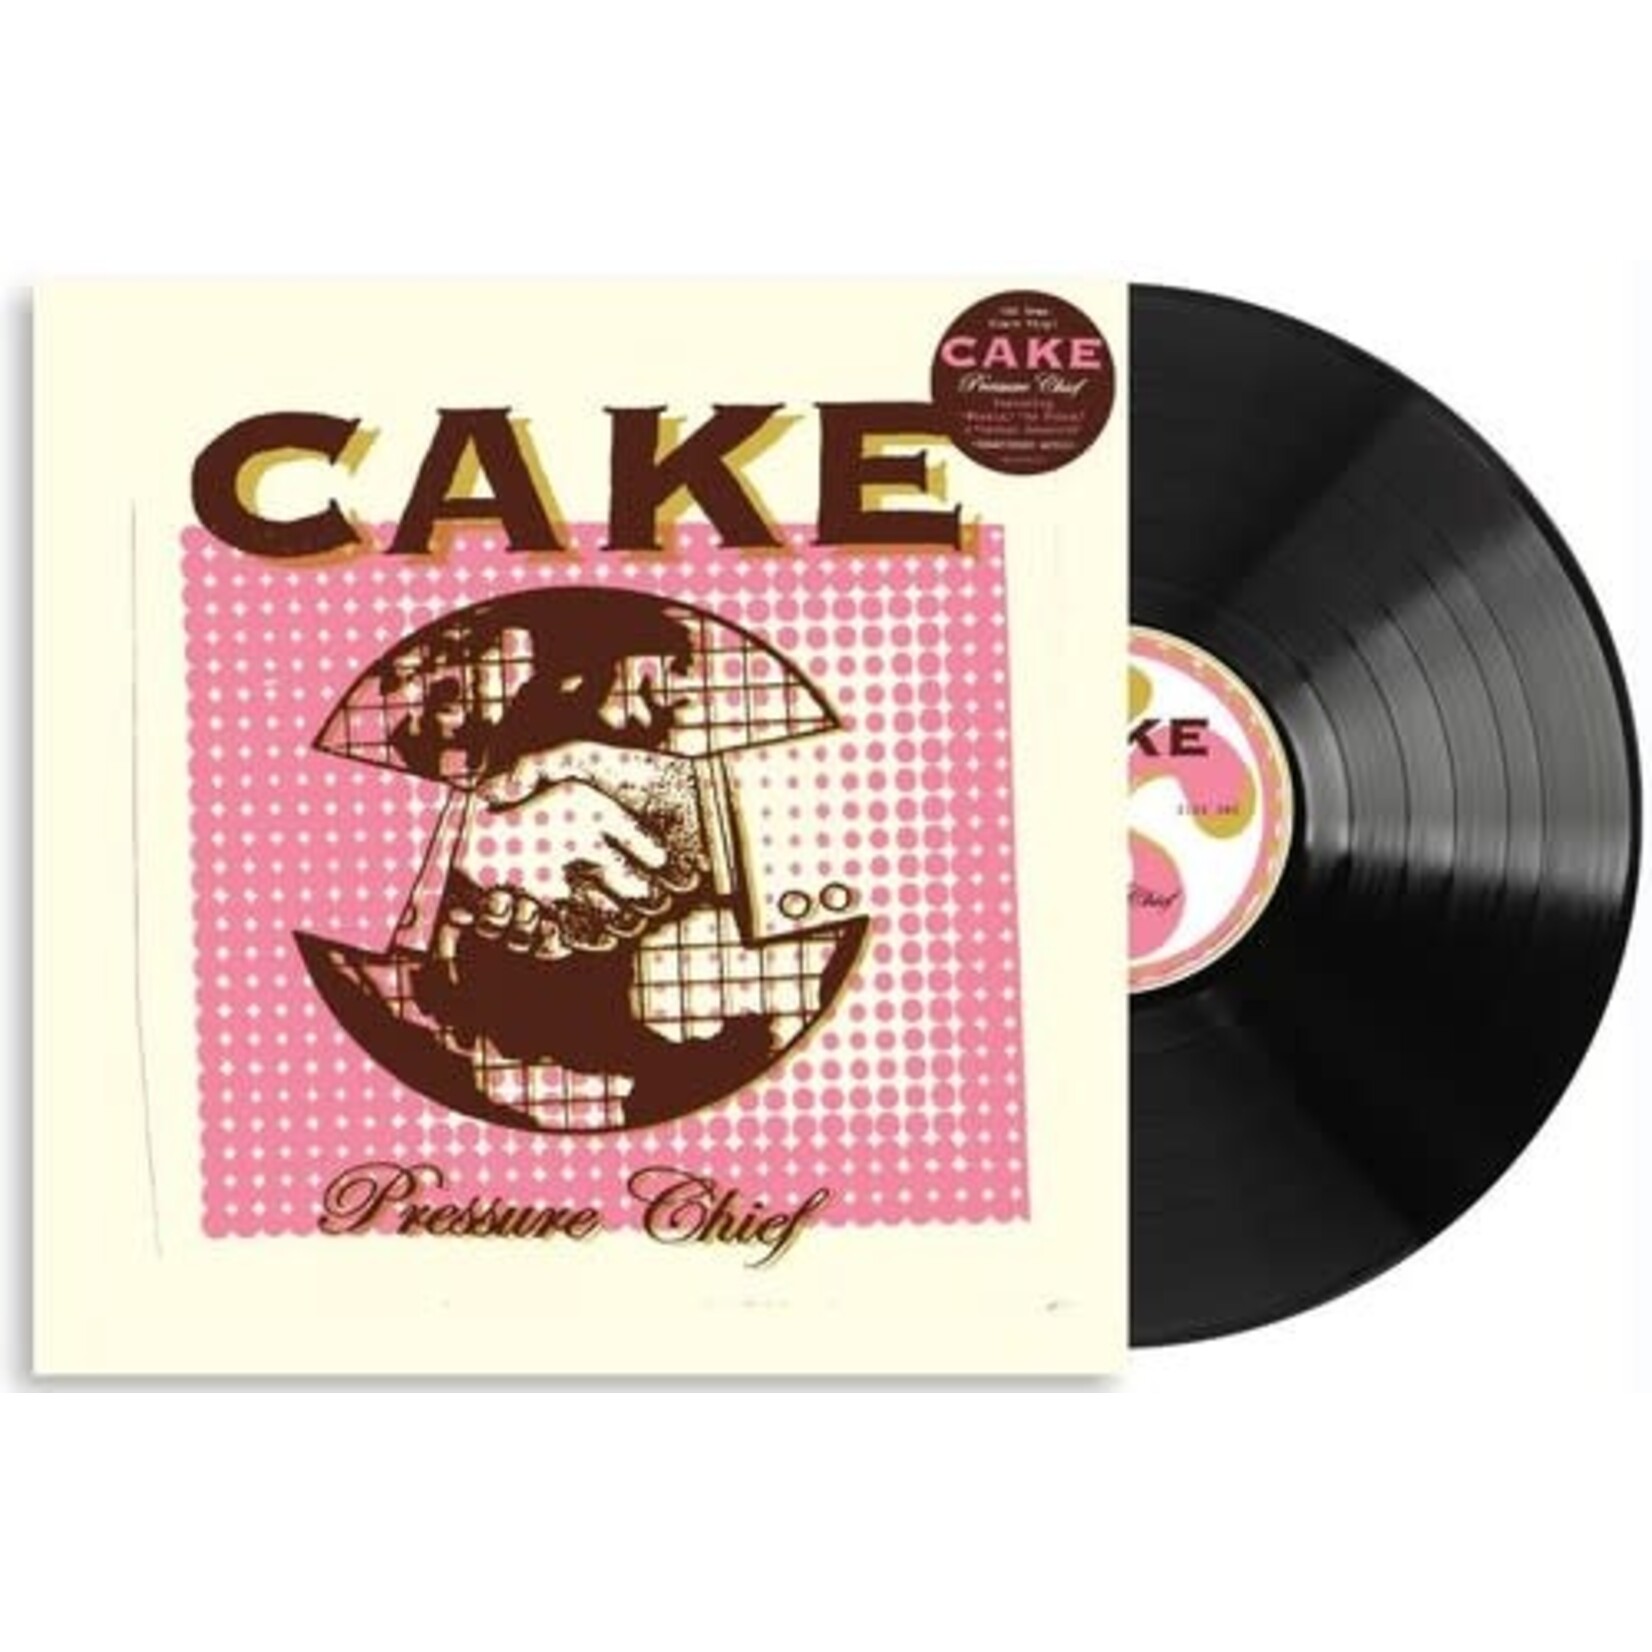 Cake - Pressure Chief [LP]